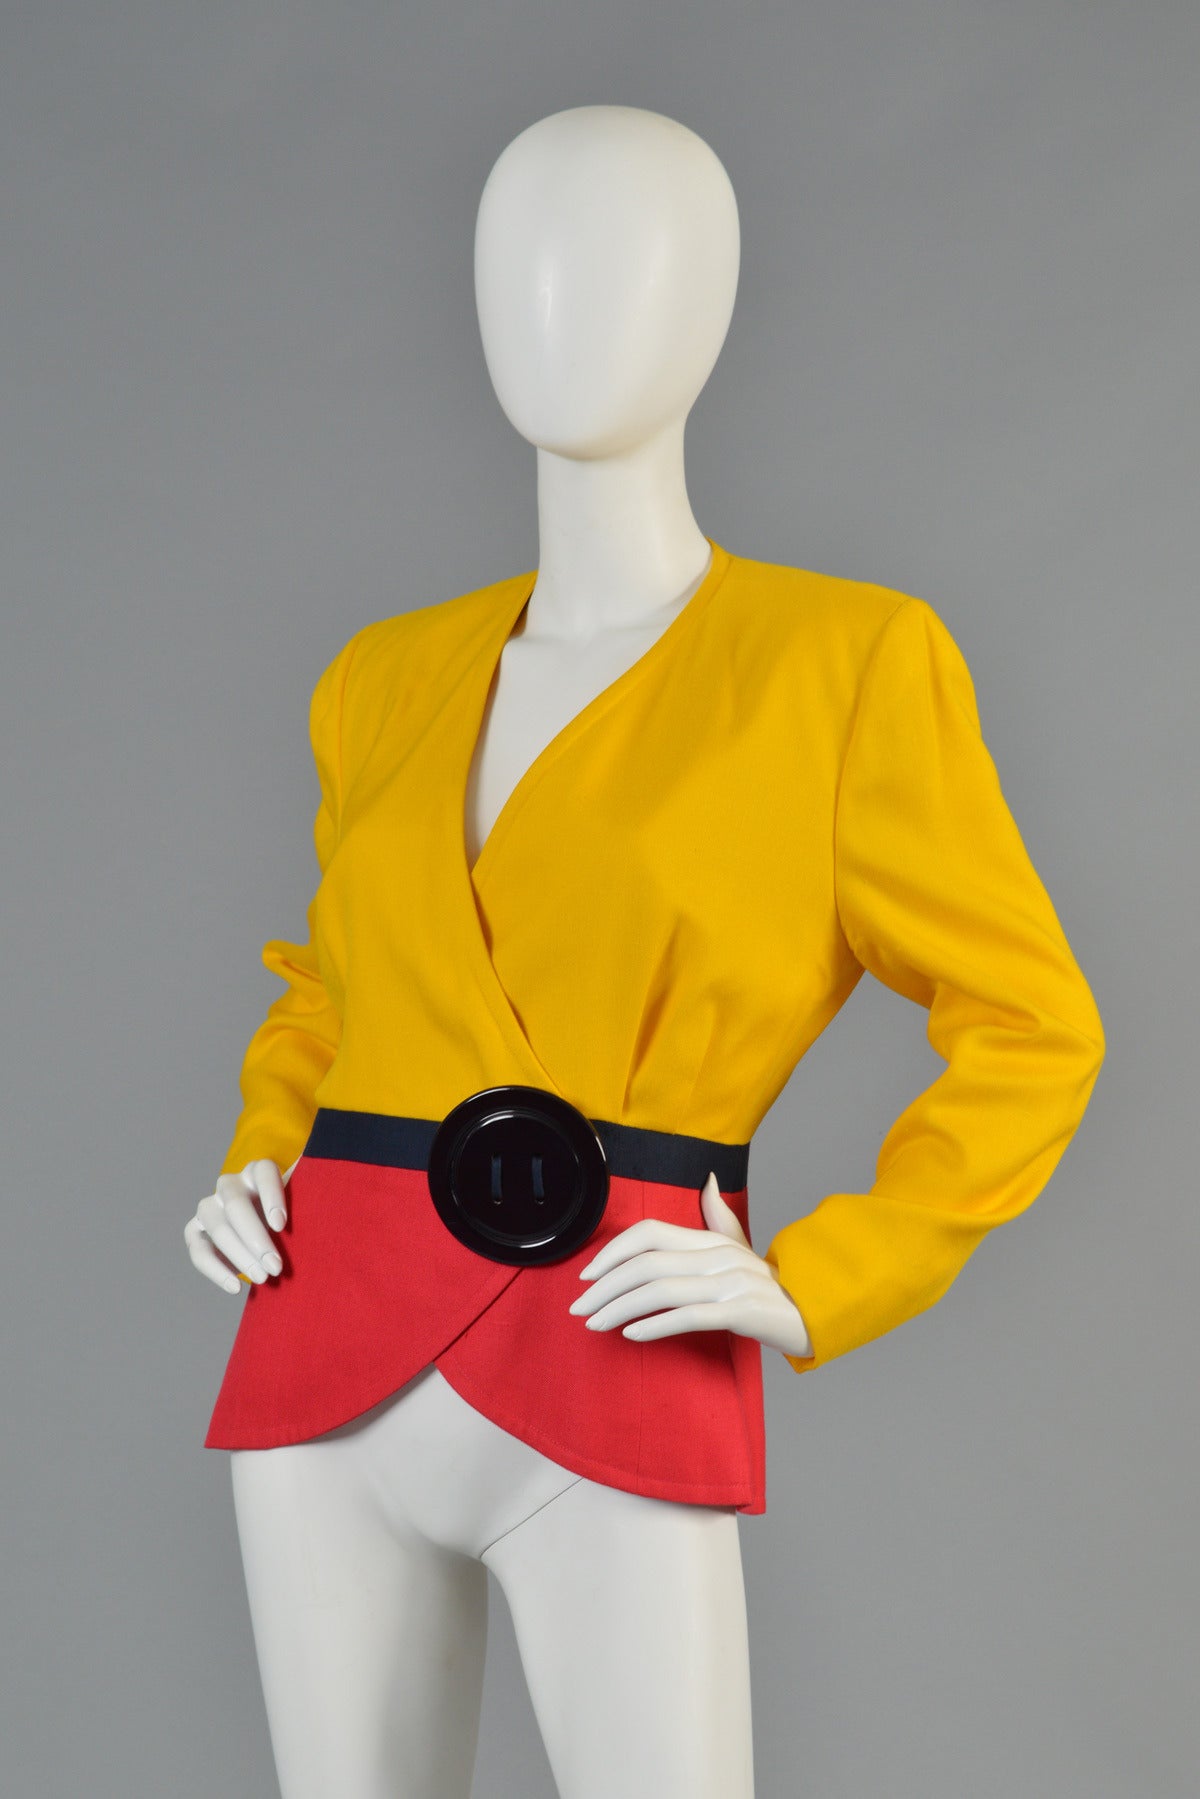 1989 Oscar de la Renta for Pierre Balmain Haute Couture Colorblocked Jacket For Sale 1